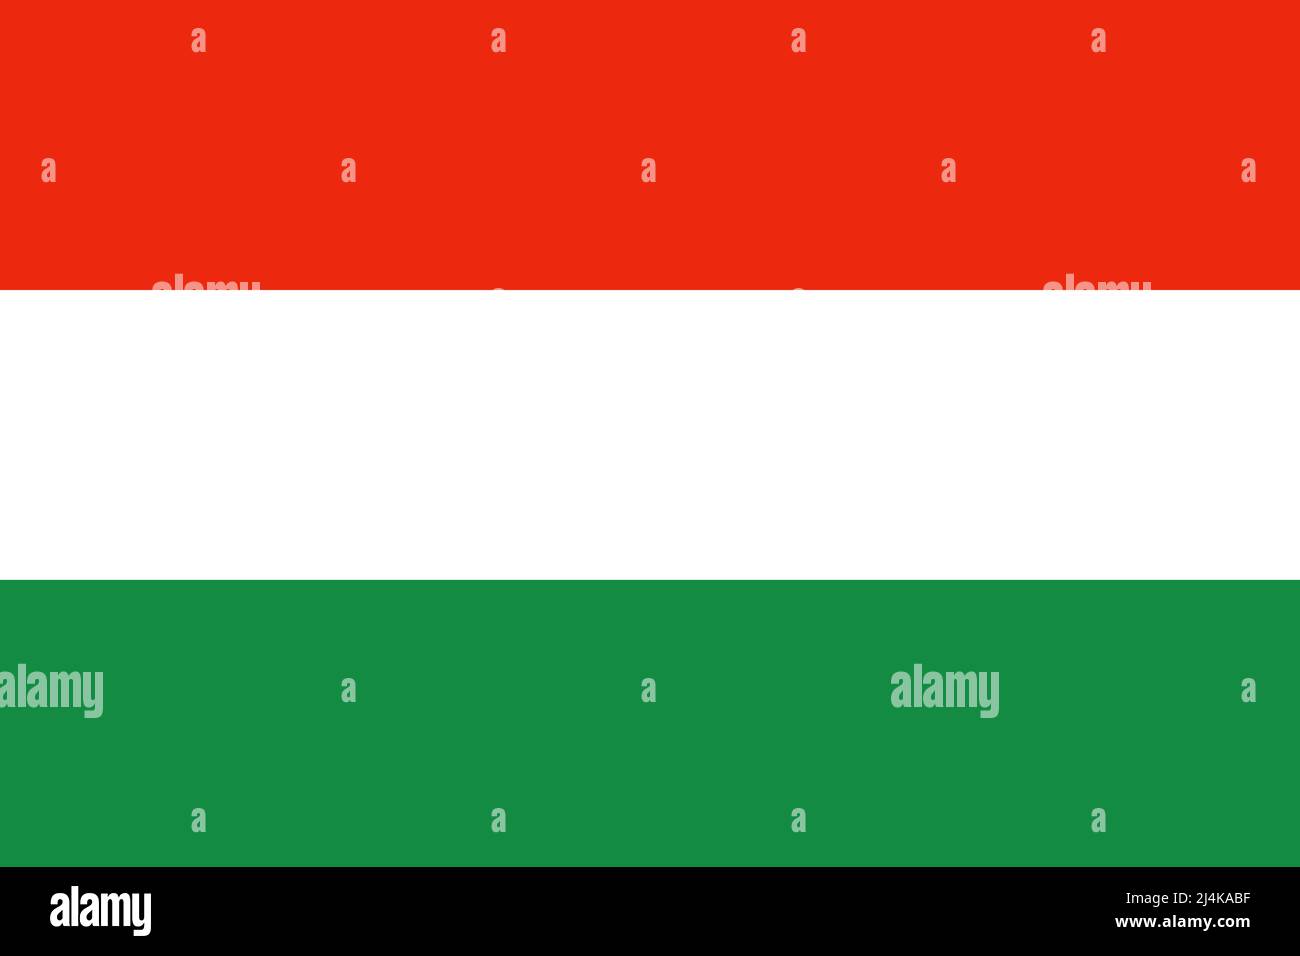 Le drapeau rouge, blanc et vert de la Hongrie. Banque D'Images